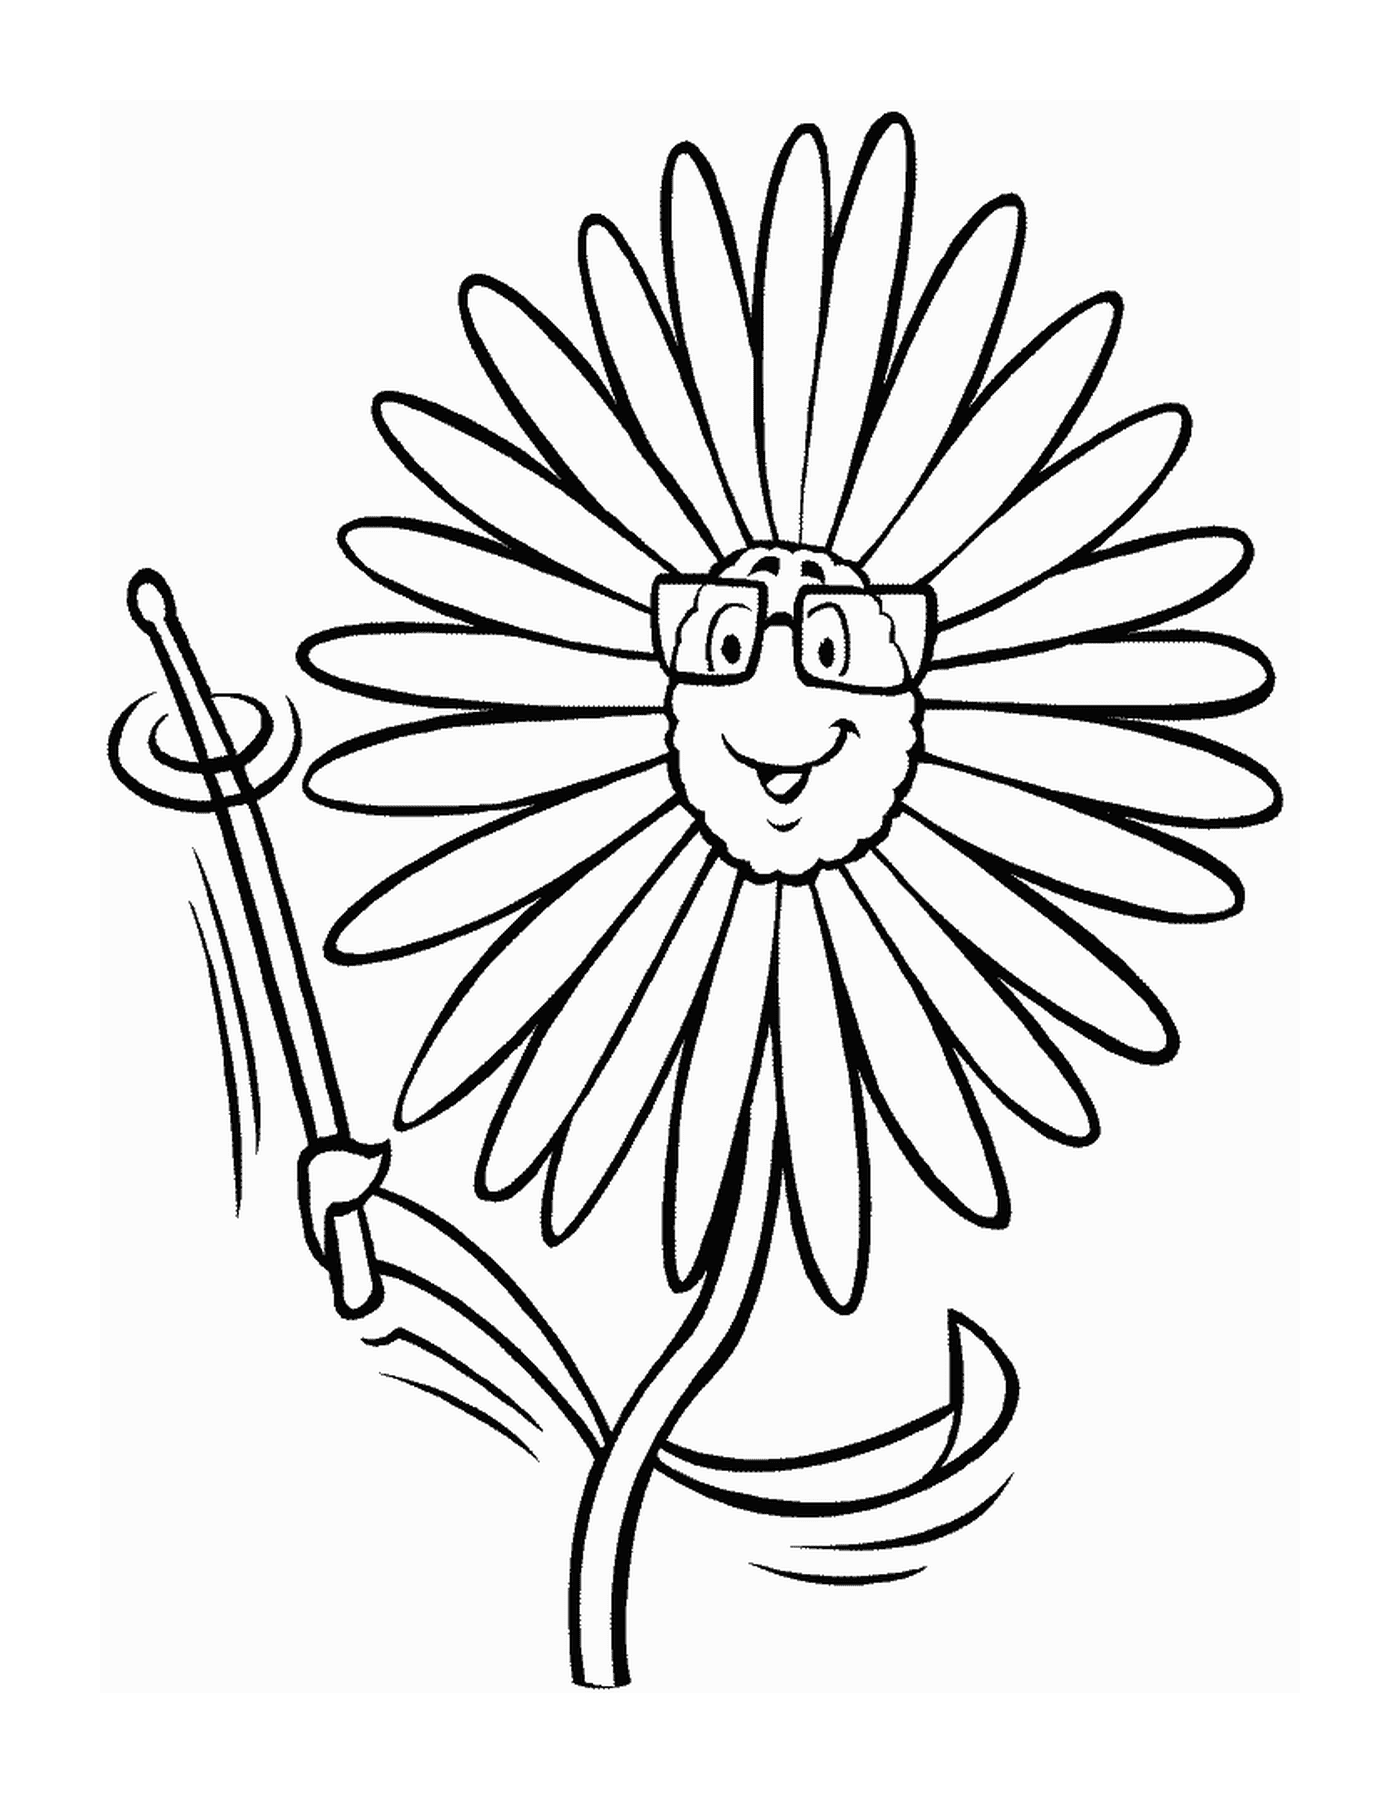  Un fiore con bicchieri sorridenti 